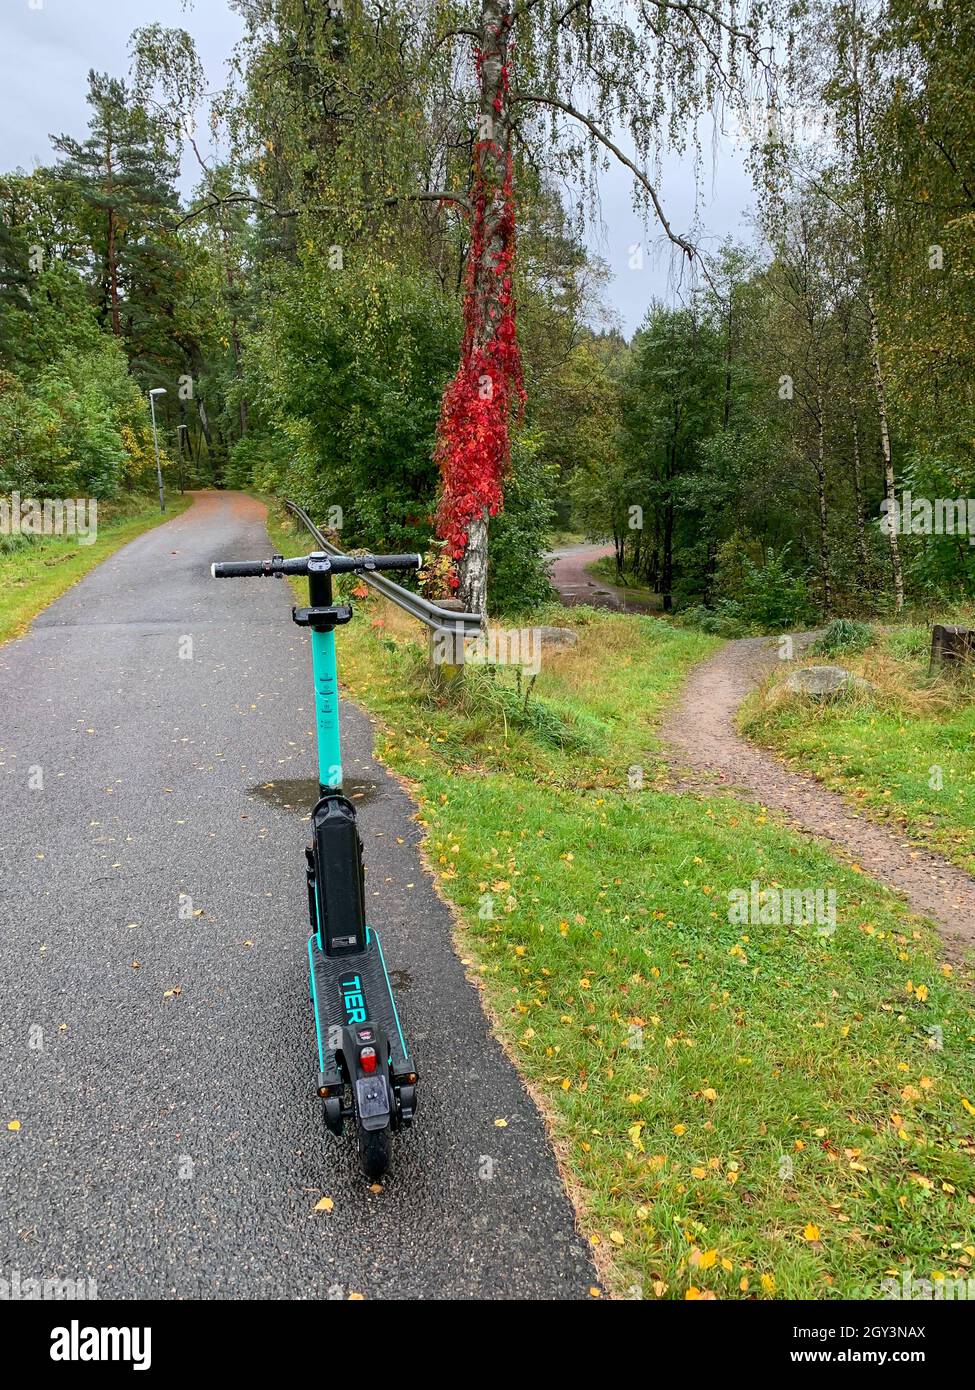 PARTILLE, SVEZIA - 28 settembre 2021: Partille, Svezia, 28 settembre 2021. Scooter elettrico abbandonato nel mezzo di un passaggio pedonale, pista ciclabile. Foto Stock